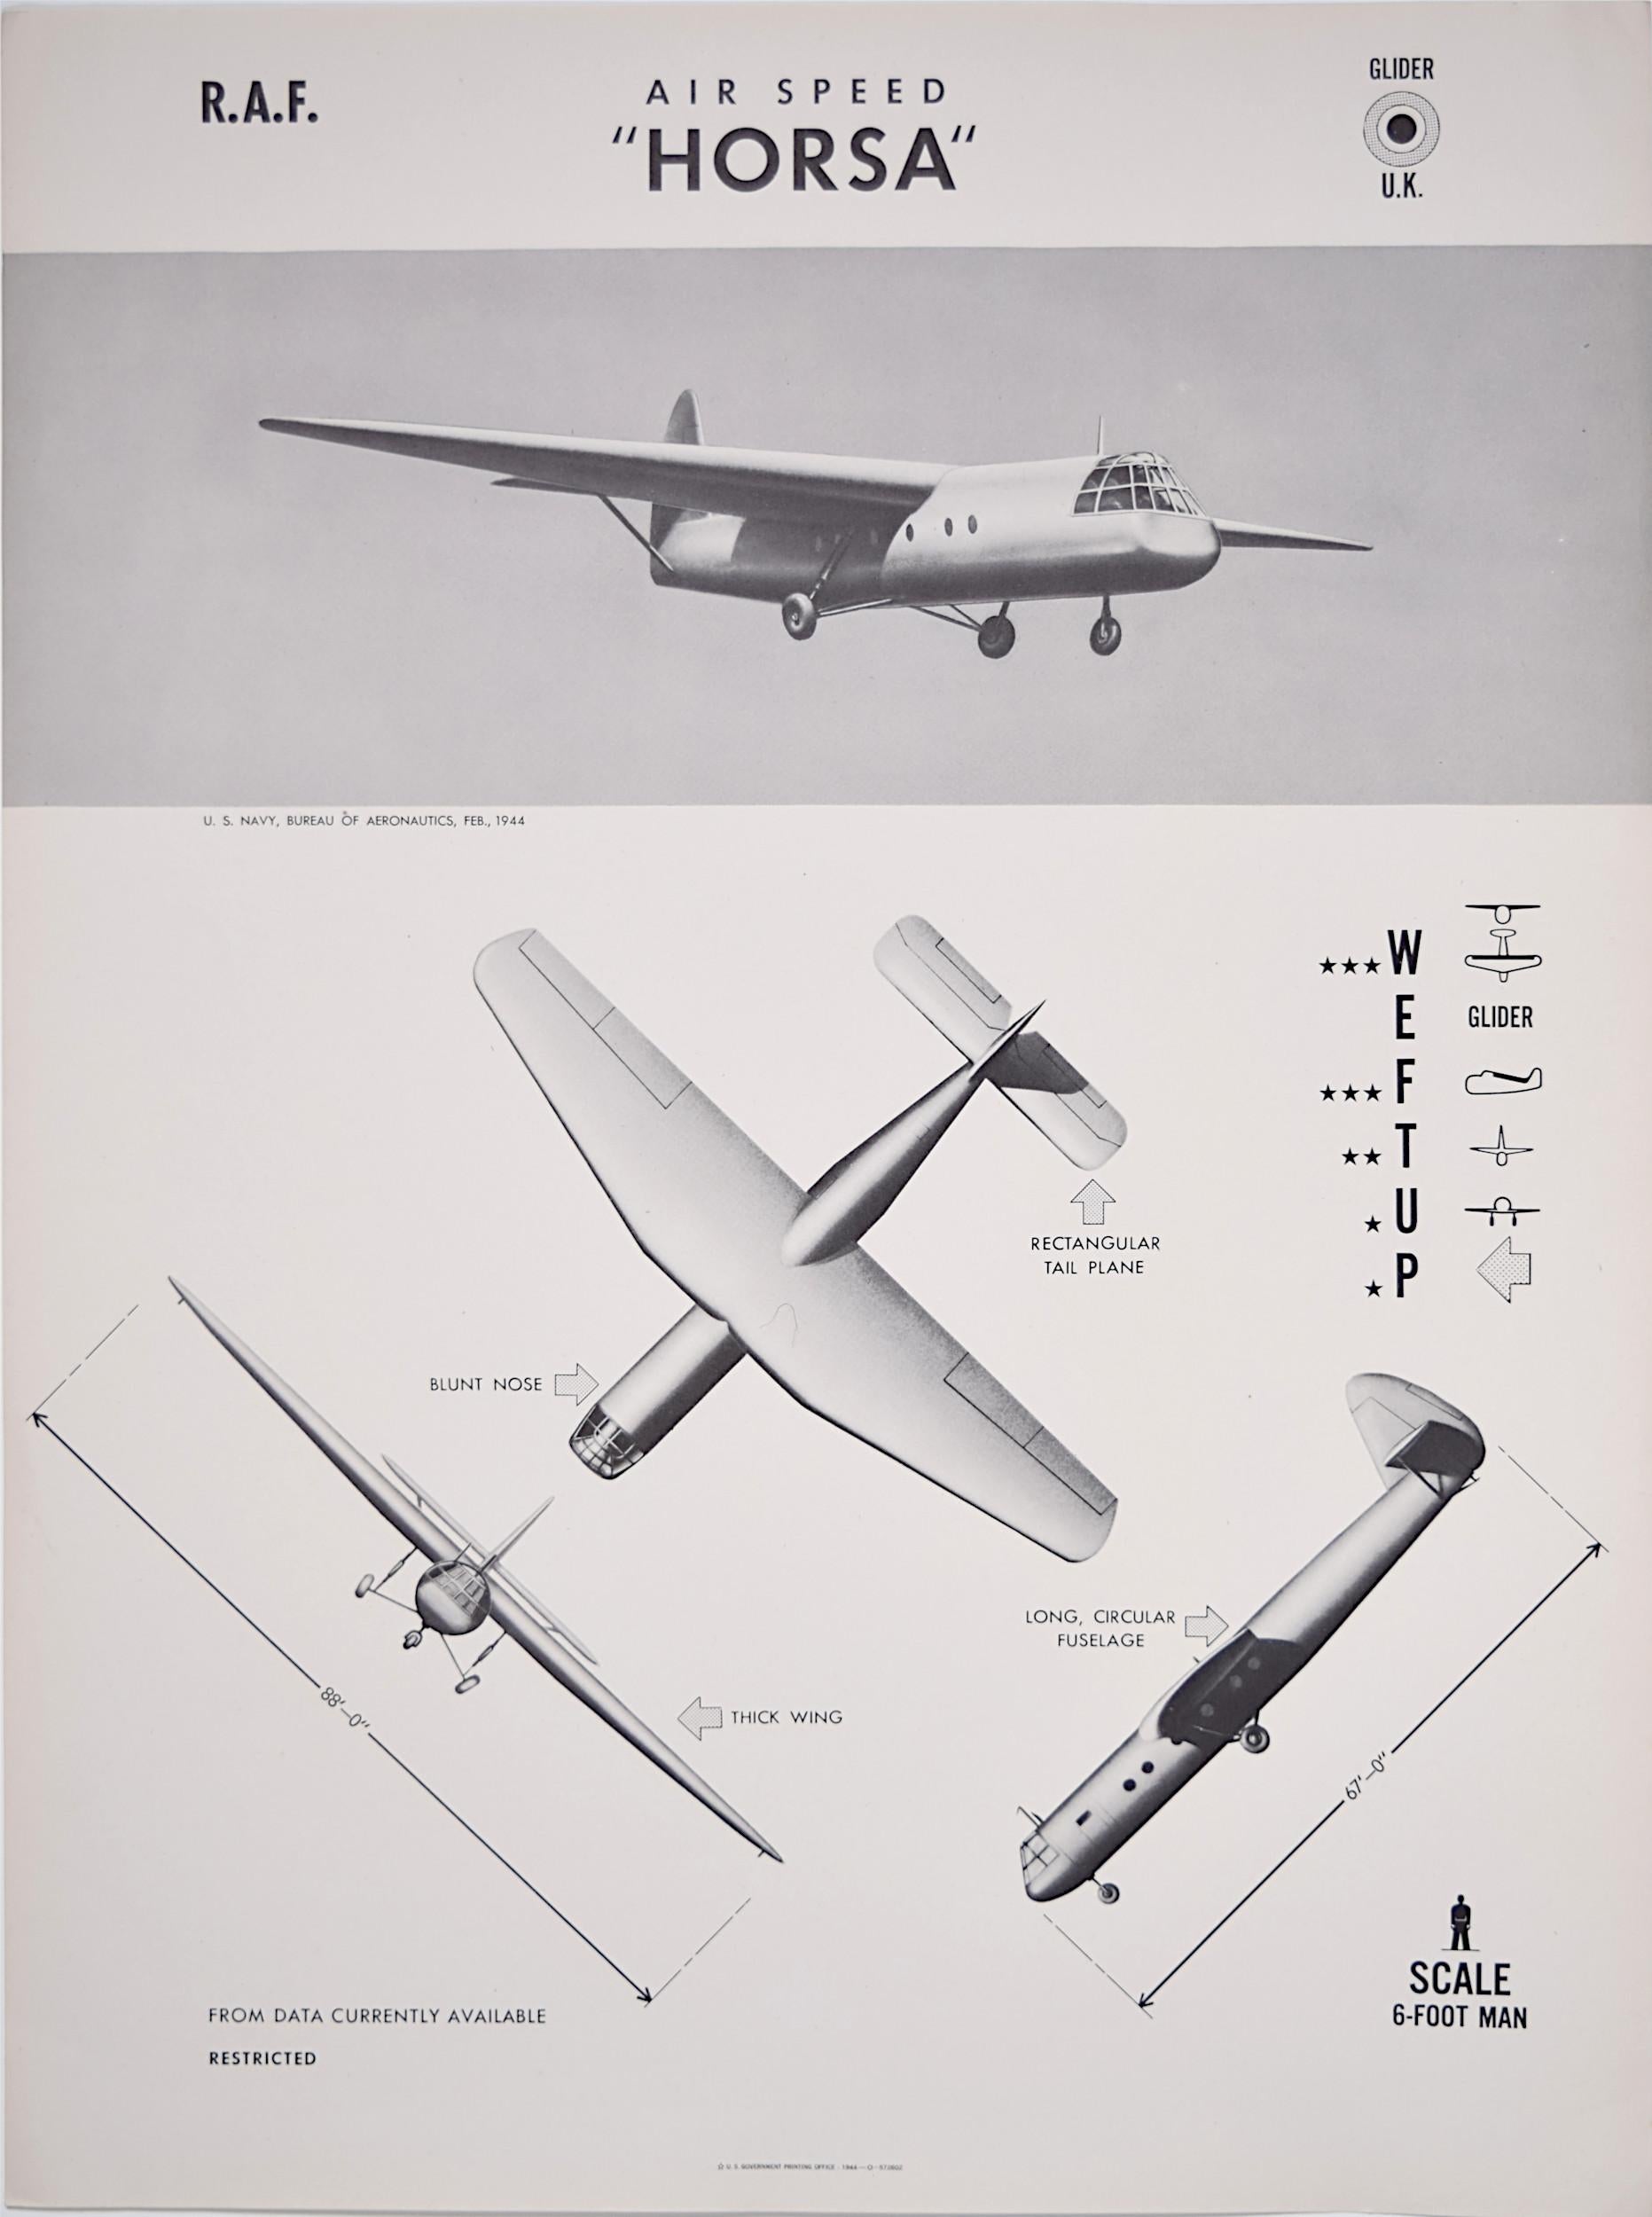 Print Unknown - Affiche de reconnaissance d'avions Royal Airspeed Horsa Glider de 1943 de la marine américaine